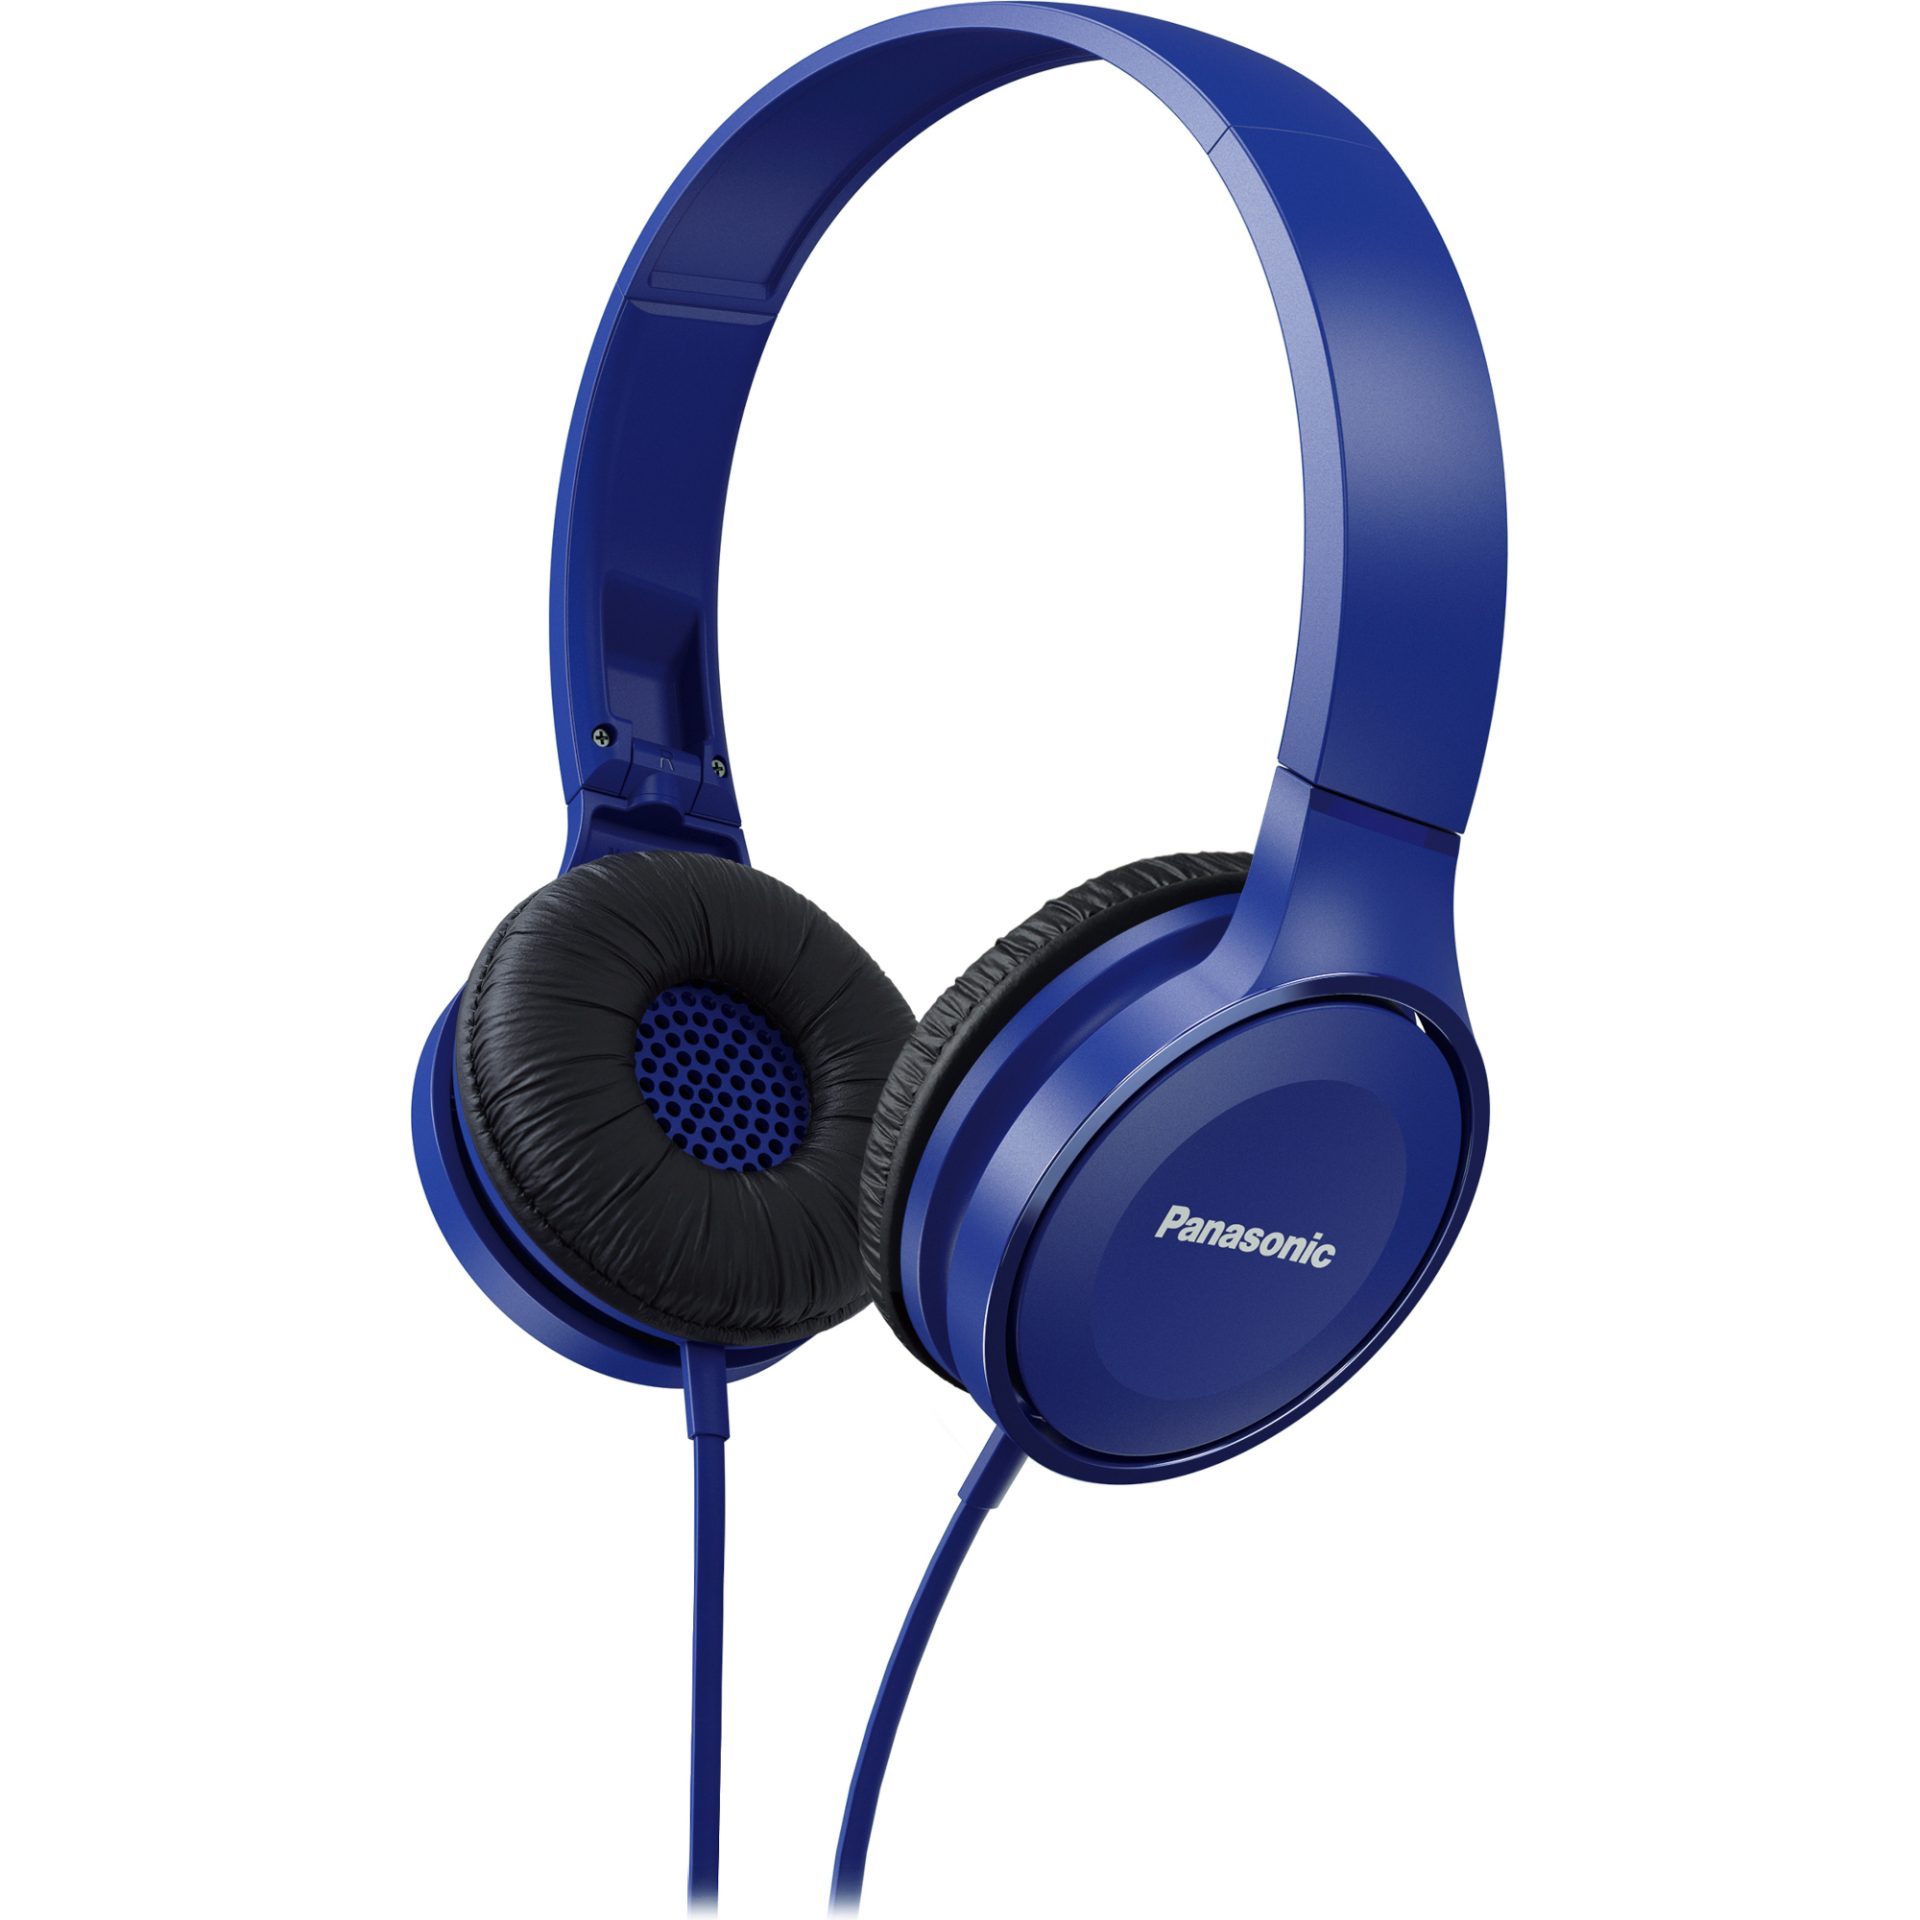 Panasonic RP-HF100 stylová sluchátka přes uši propojená s mikrofonem (30mm neodymový magnetický měnič, sklopný dovnitř, pohodlný),modrá